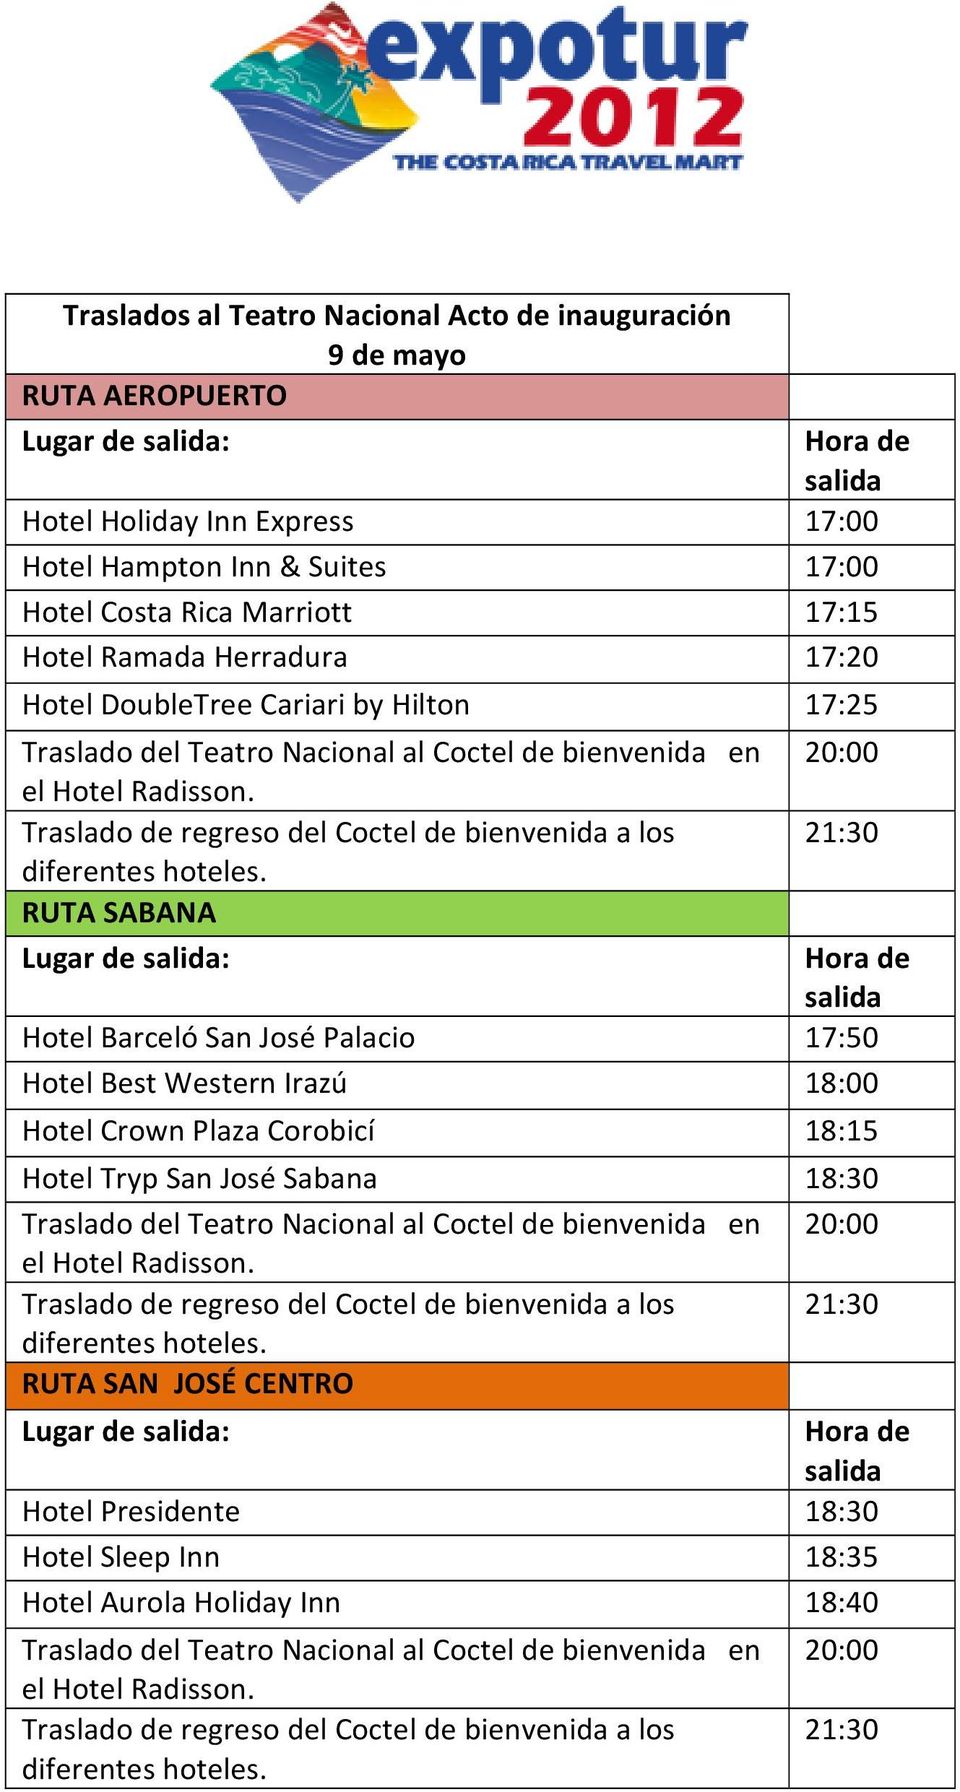 Best Western Irazú 18:00 Hotel Crown Plaza Corobicí 18:15 Hotel Tryp San José Sabana 18:30 Traslado del Teatro Nacional al Coctel de bienvenida en 20:00 Traslado de regreso del Coctel de bienvenida a